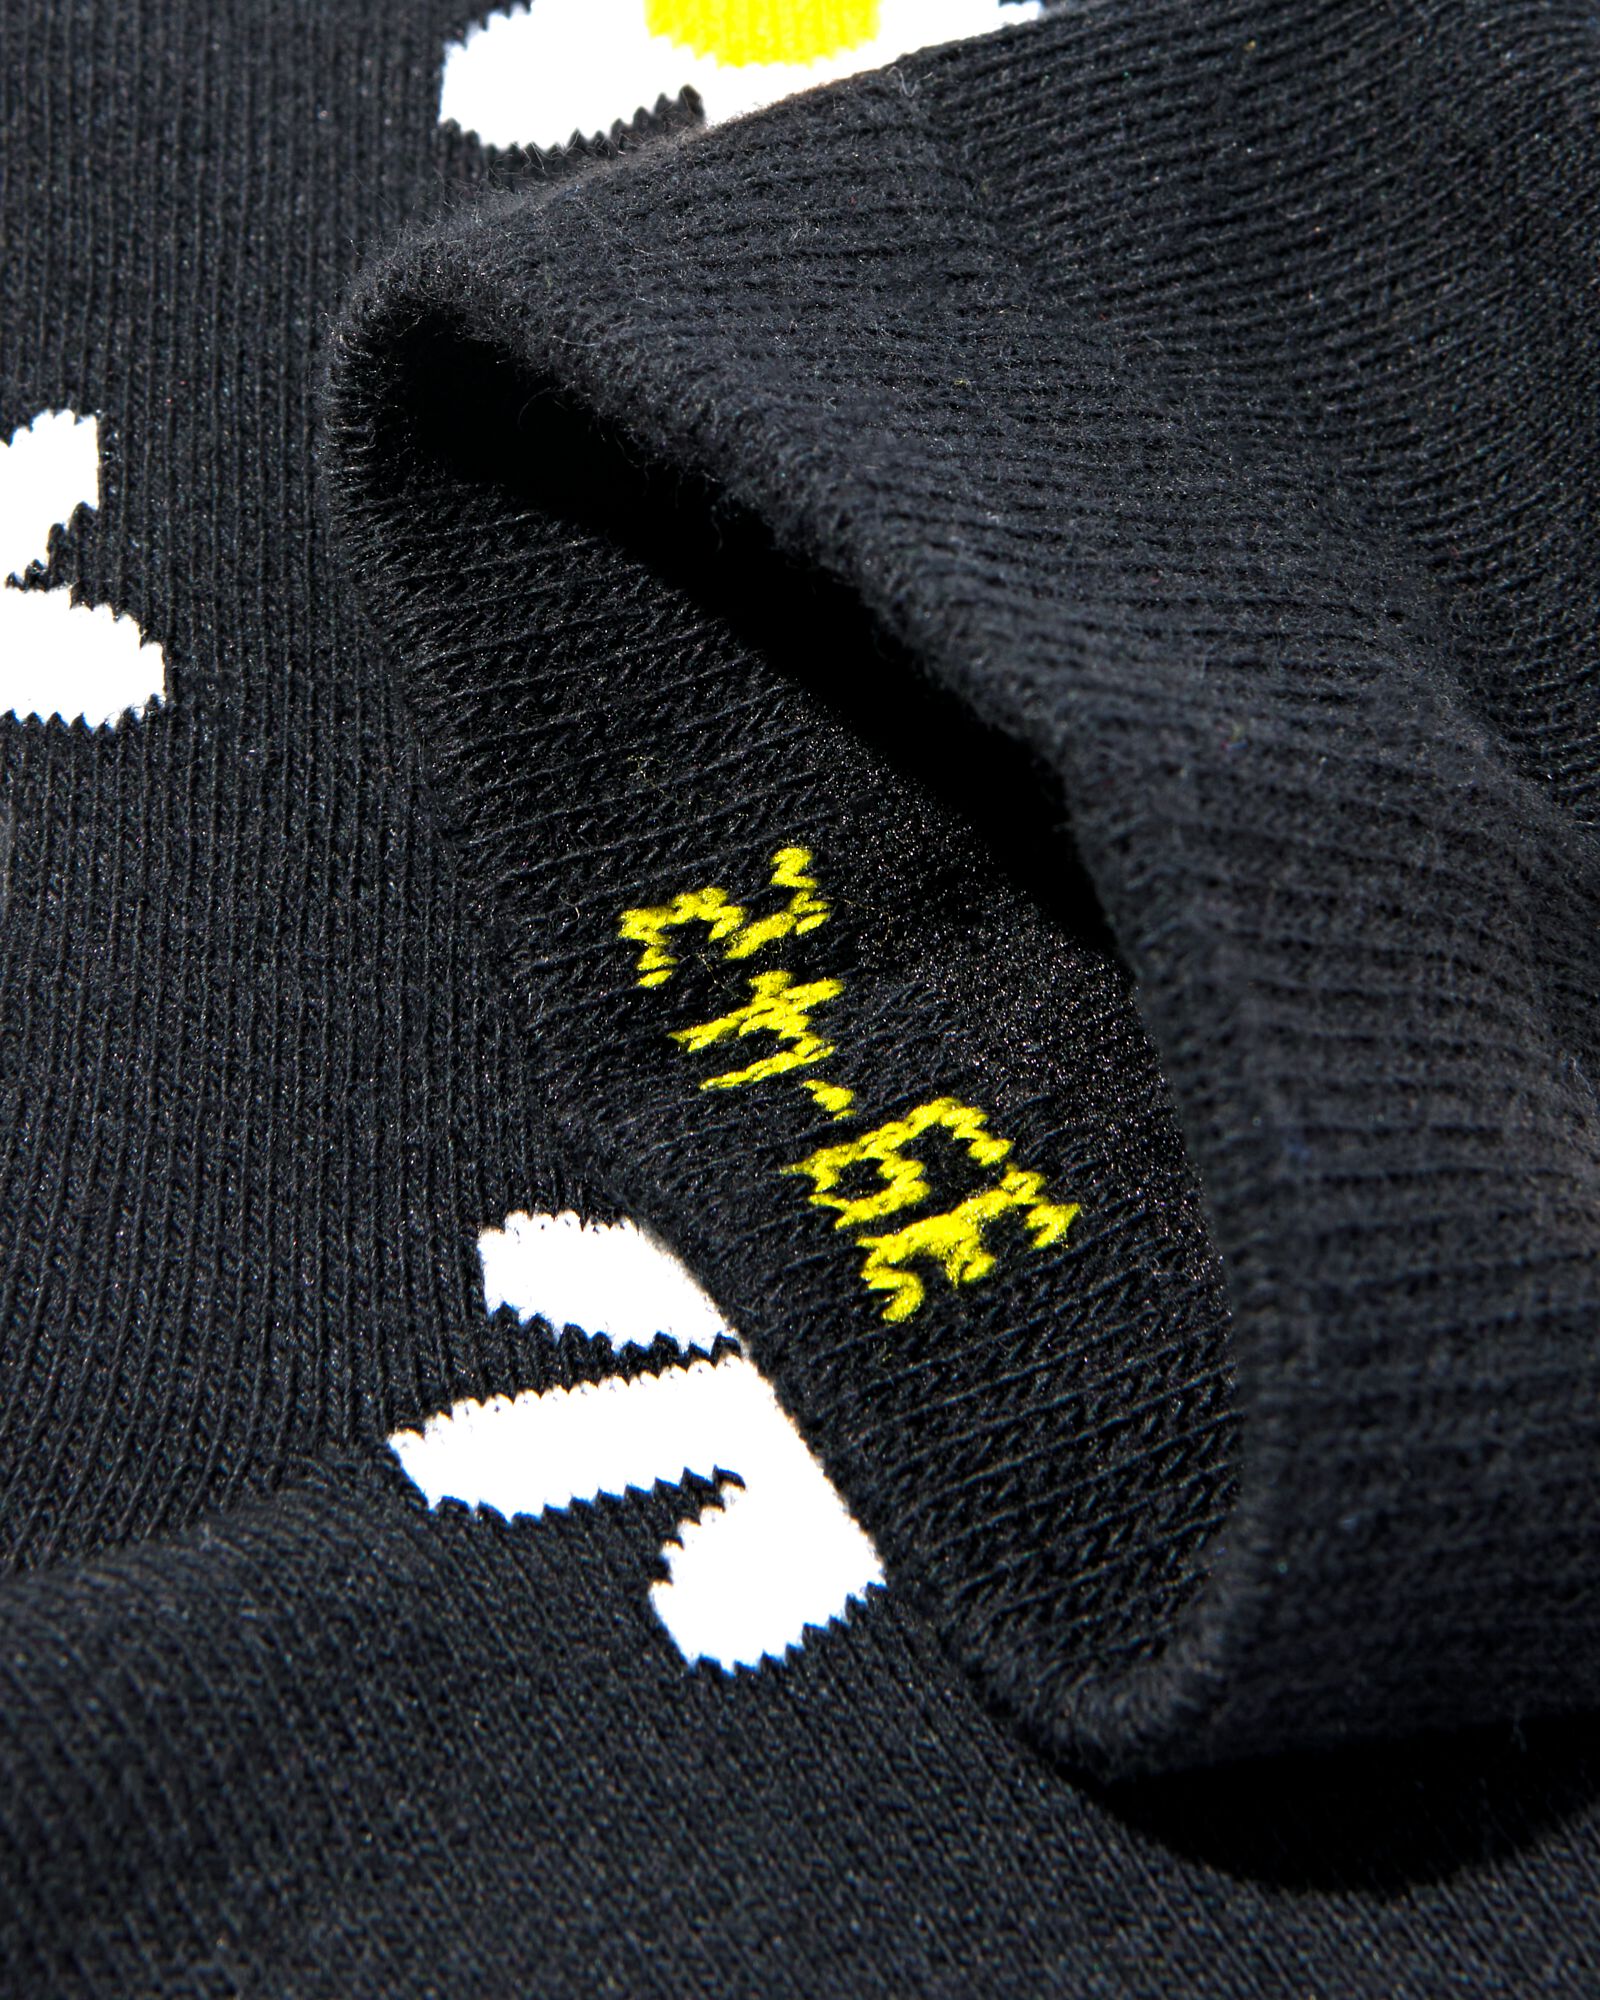 sokken met katoen madeliefjes zwart zwart - 4141105BLACK - HEMA